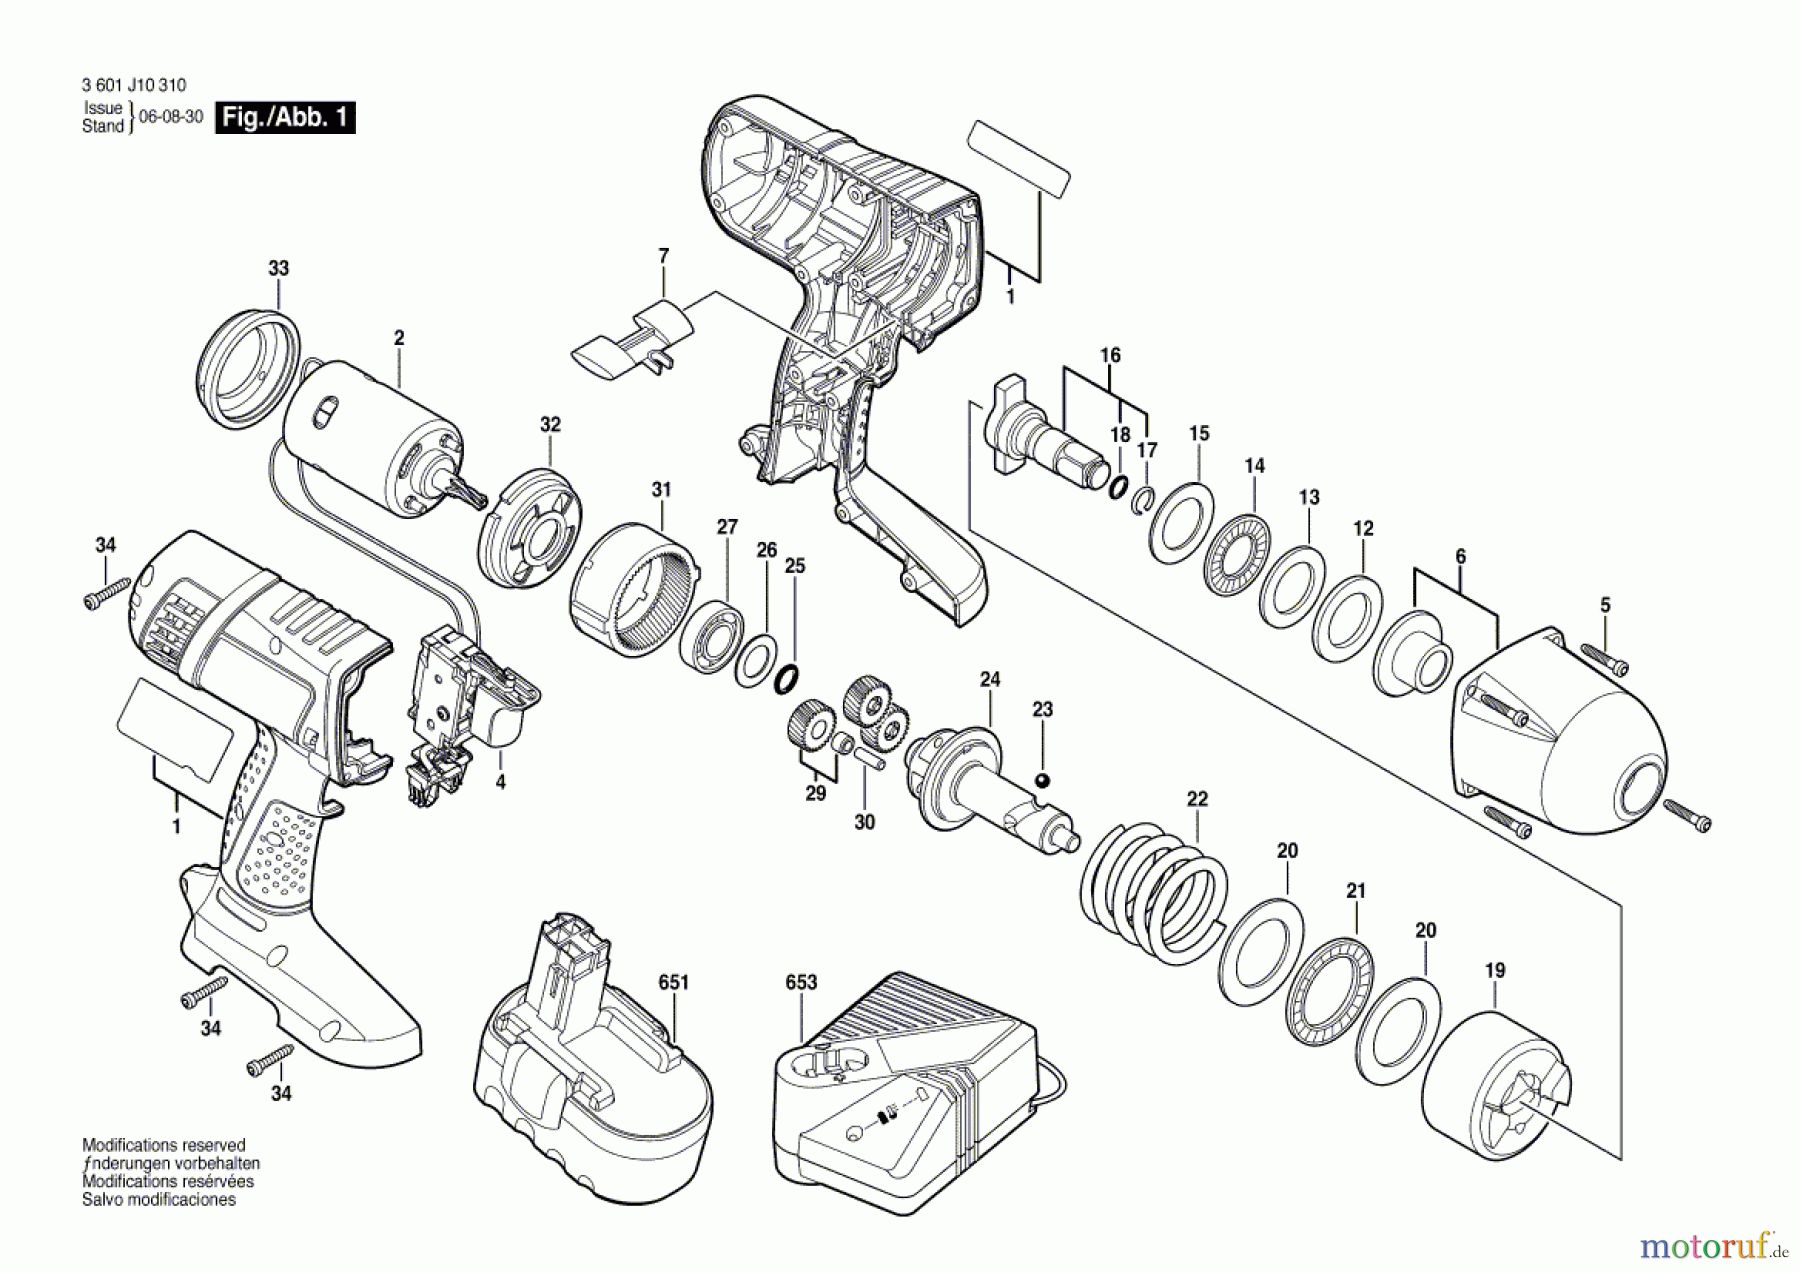  Bosch Werkzeug Schlagschrauber GDS 18 V-HT Seite 1